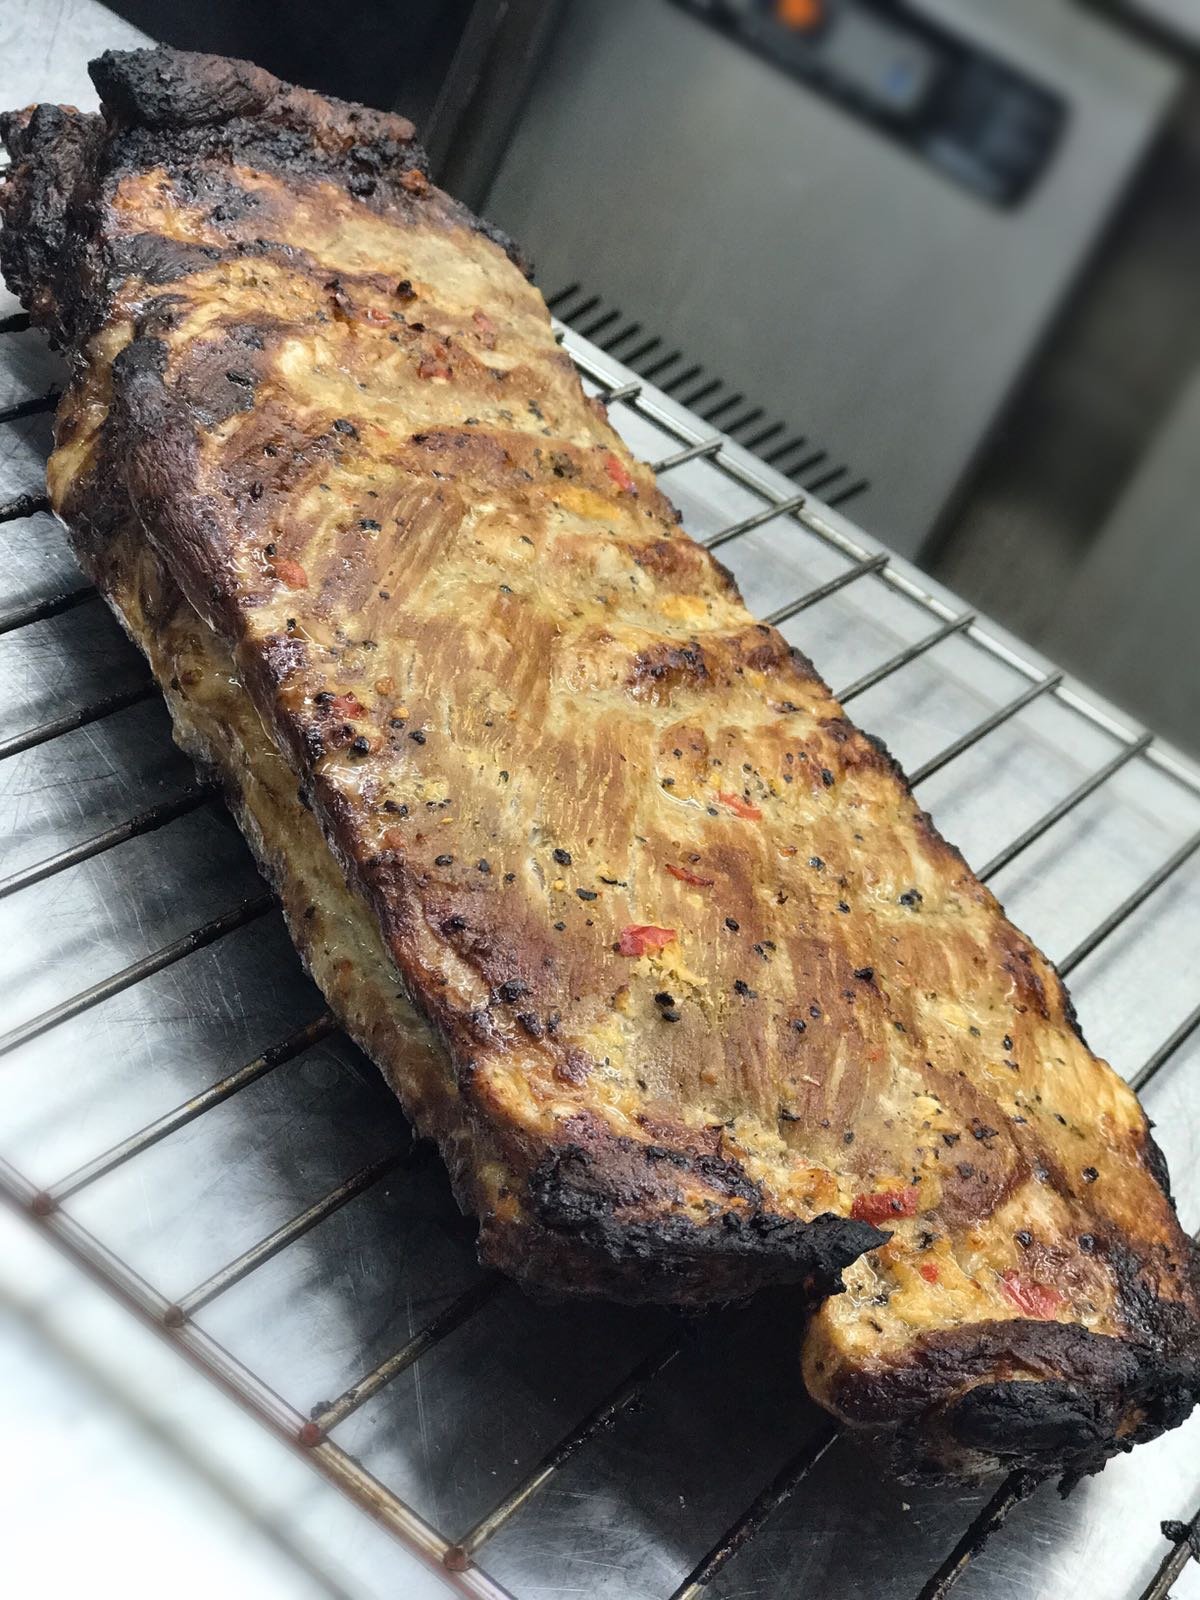 葡萄牙燒豬肋骨 Portuguese Grilled Pork Ribs食譜、做法 | John Rocha的Cook1Cook食譜分享